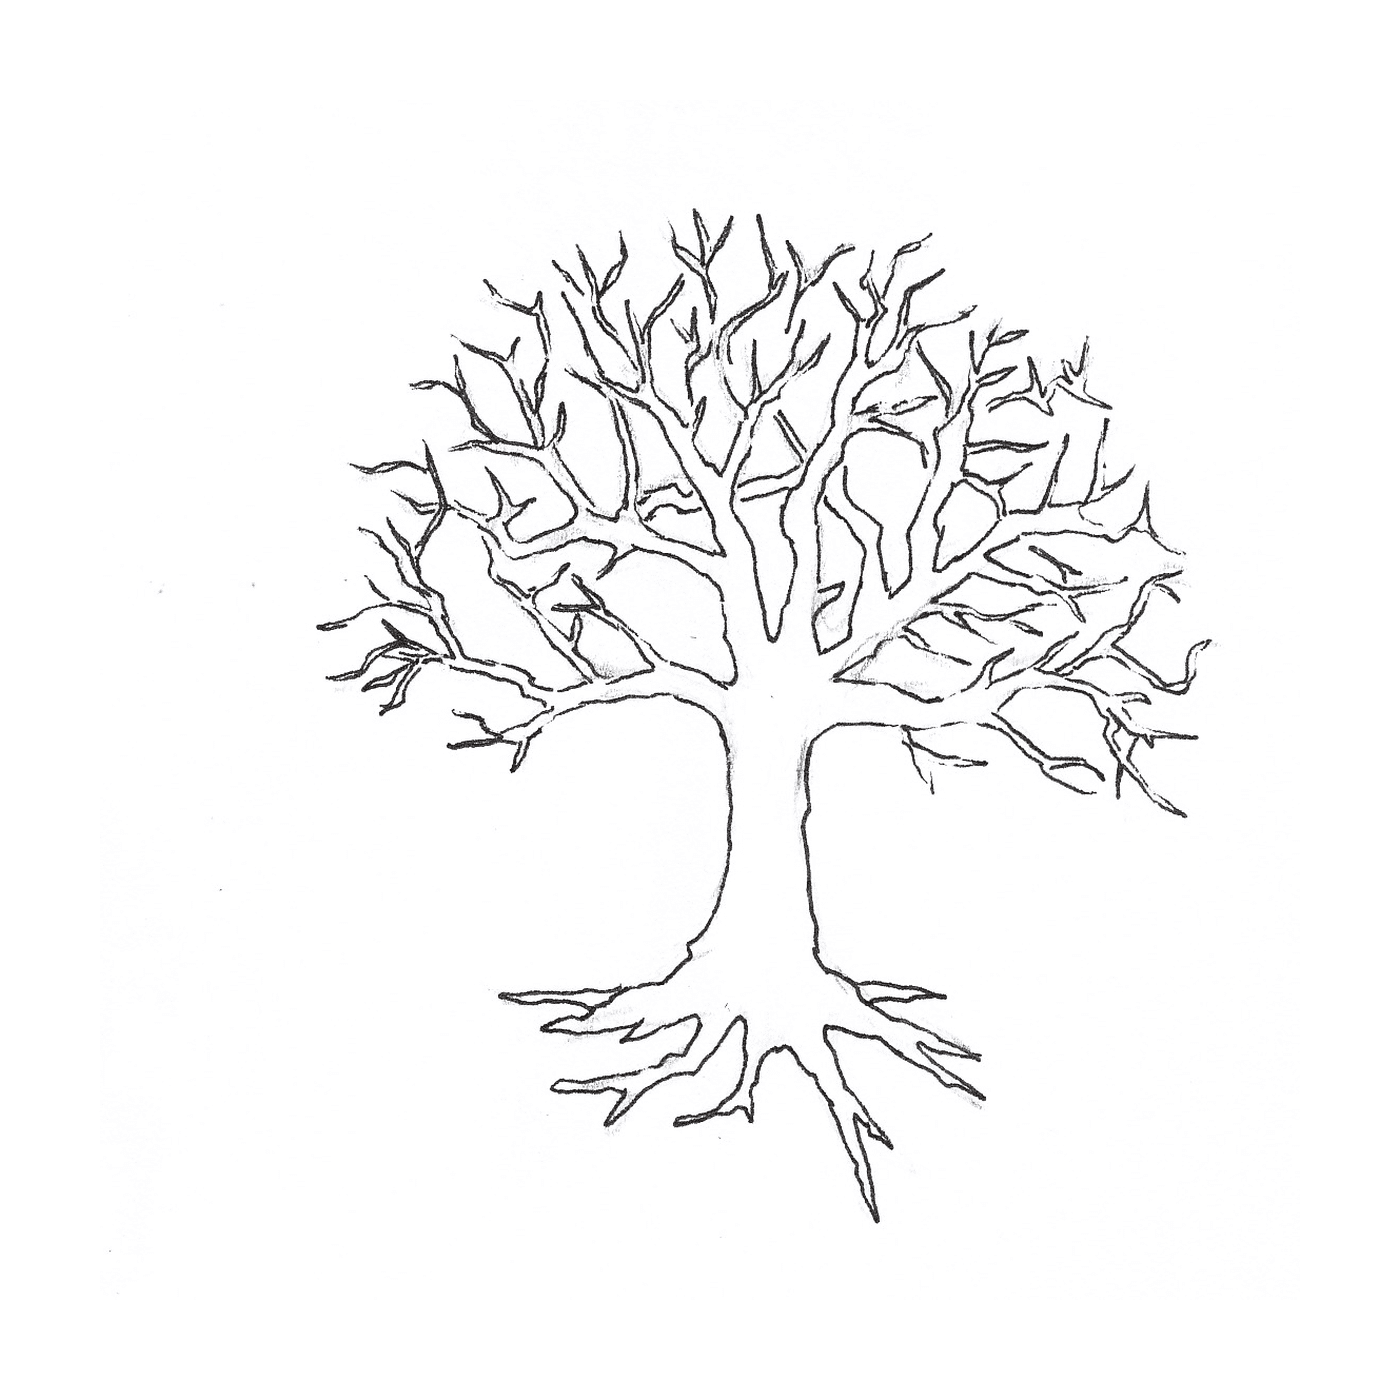  Un árbol desnudo sin hojas 